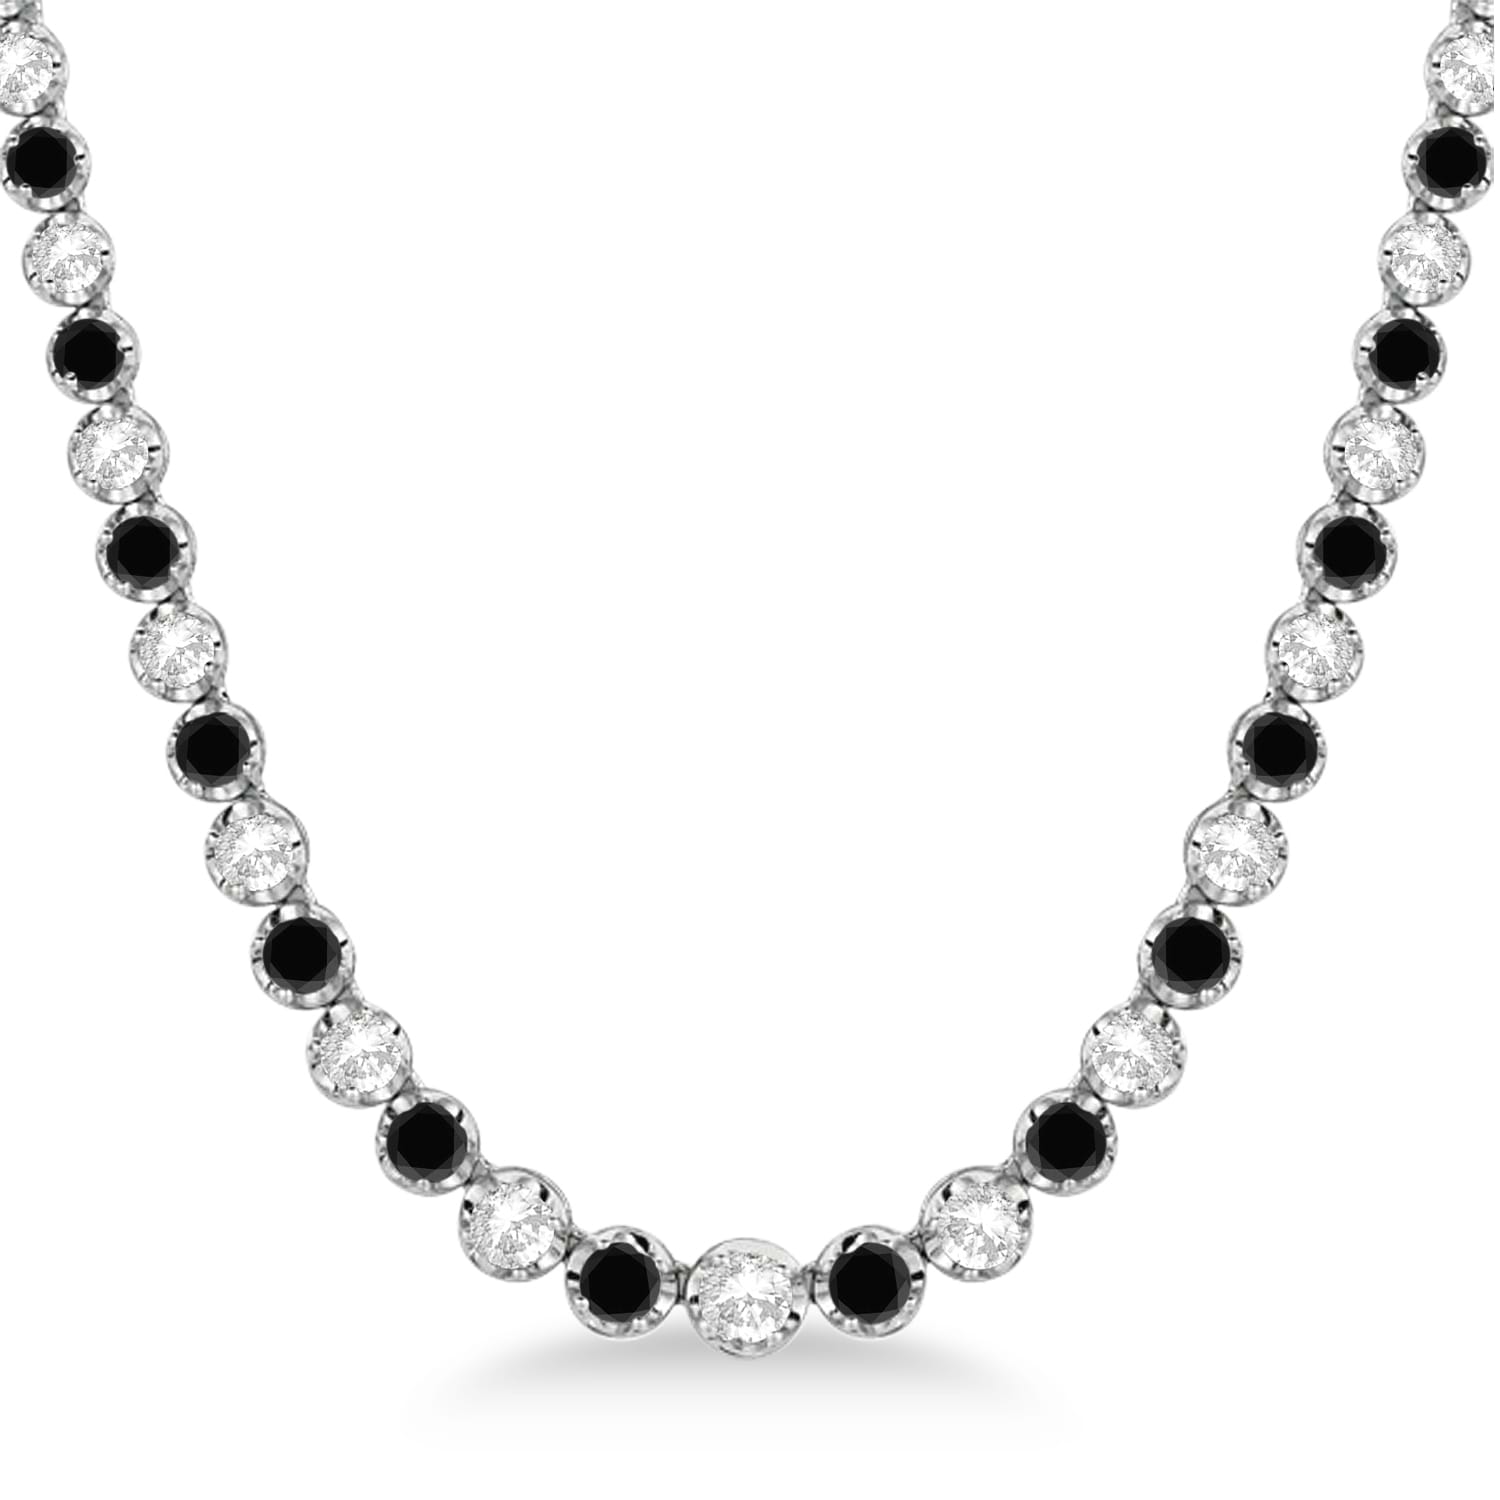 Eternity Black & White Diamond Tennis Necklace 14k White Gold (10.35ct)